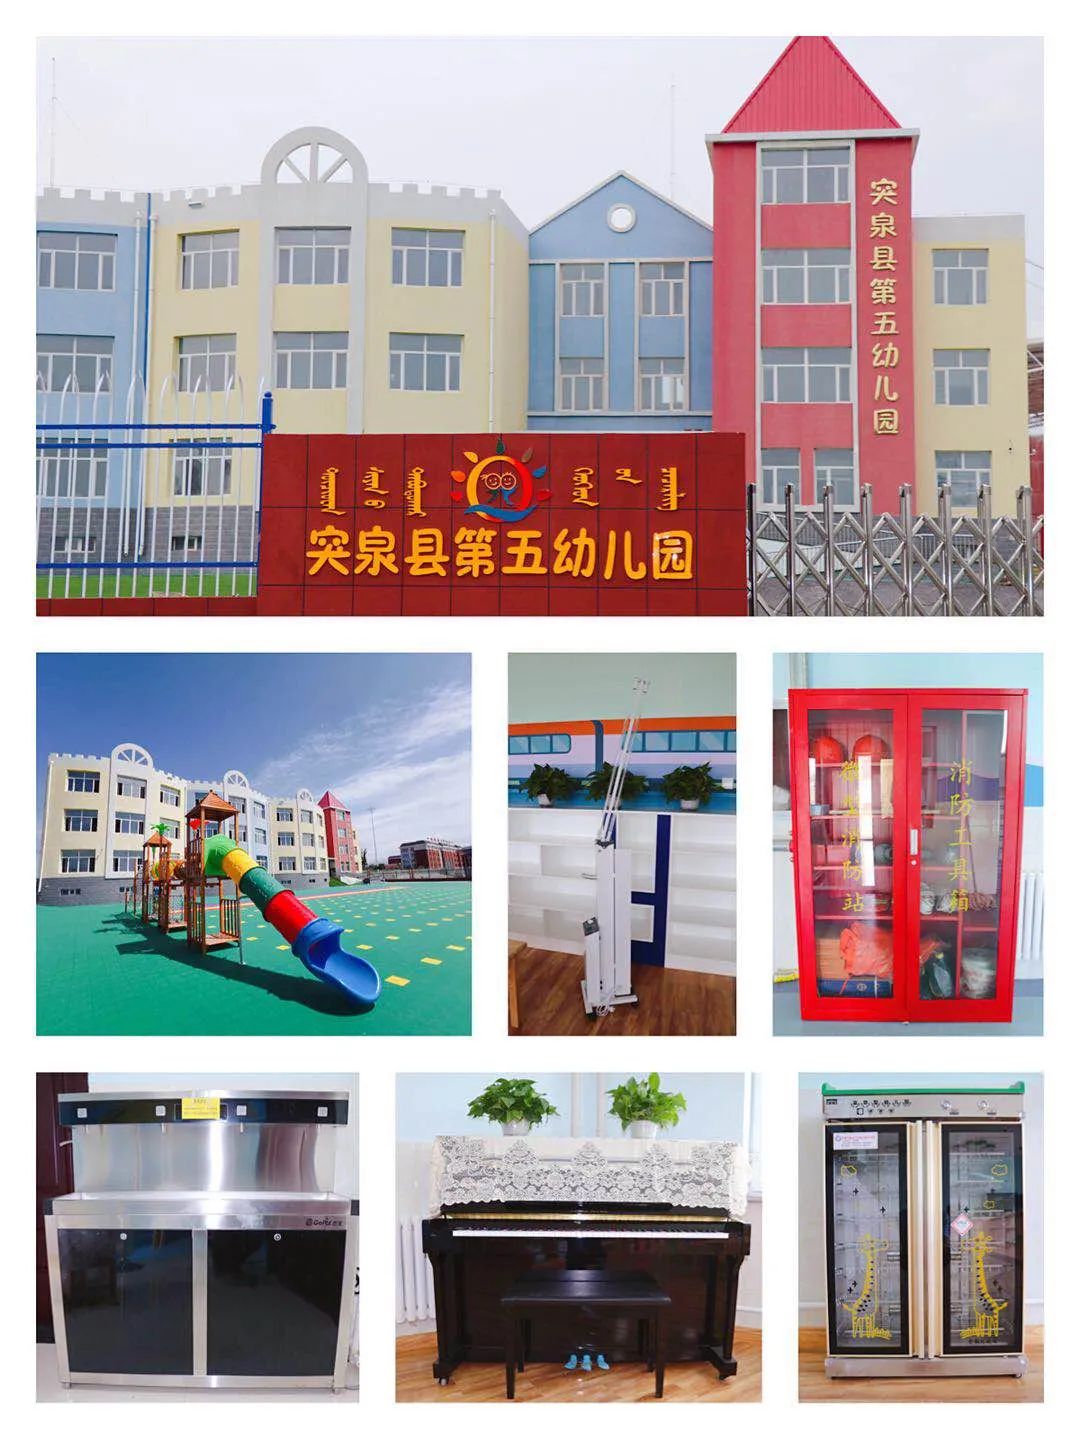 突泉县第五幼儿园2020年秋季开始招生啦